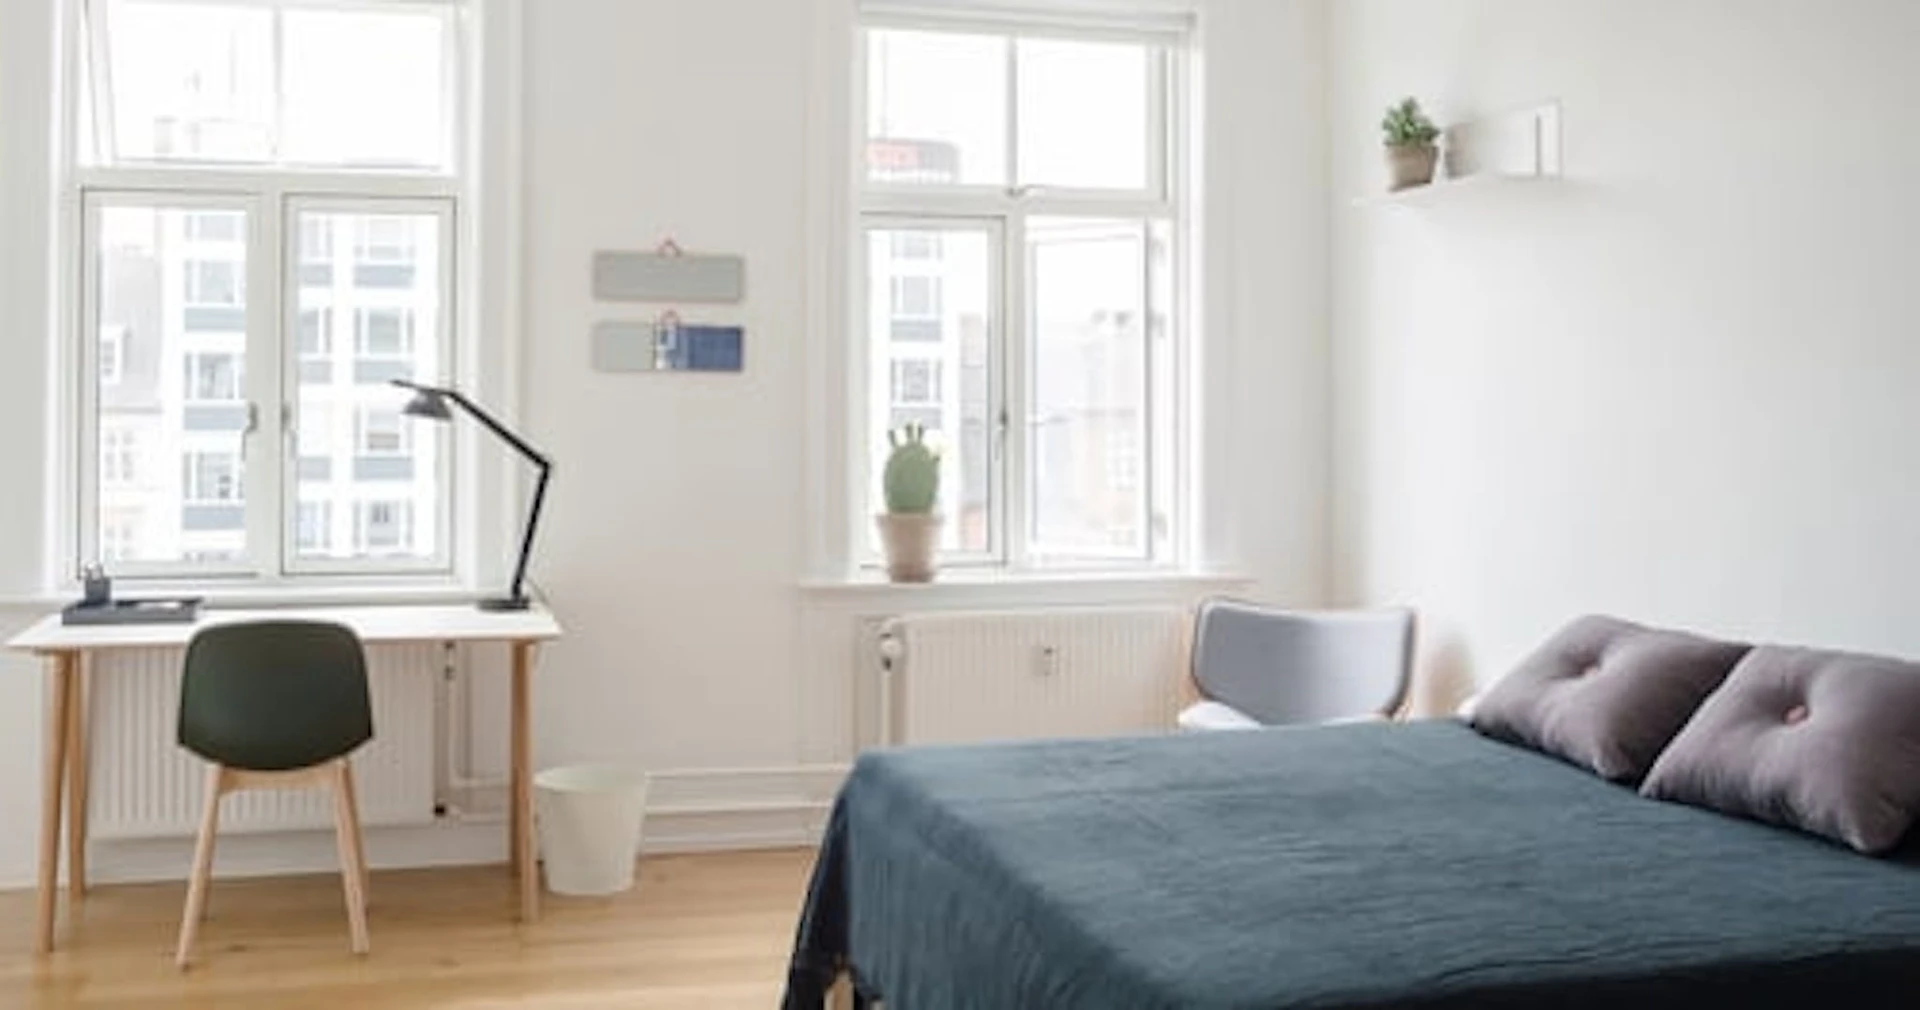 Alquiler de habitación en piso compartido en Copenhague